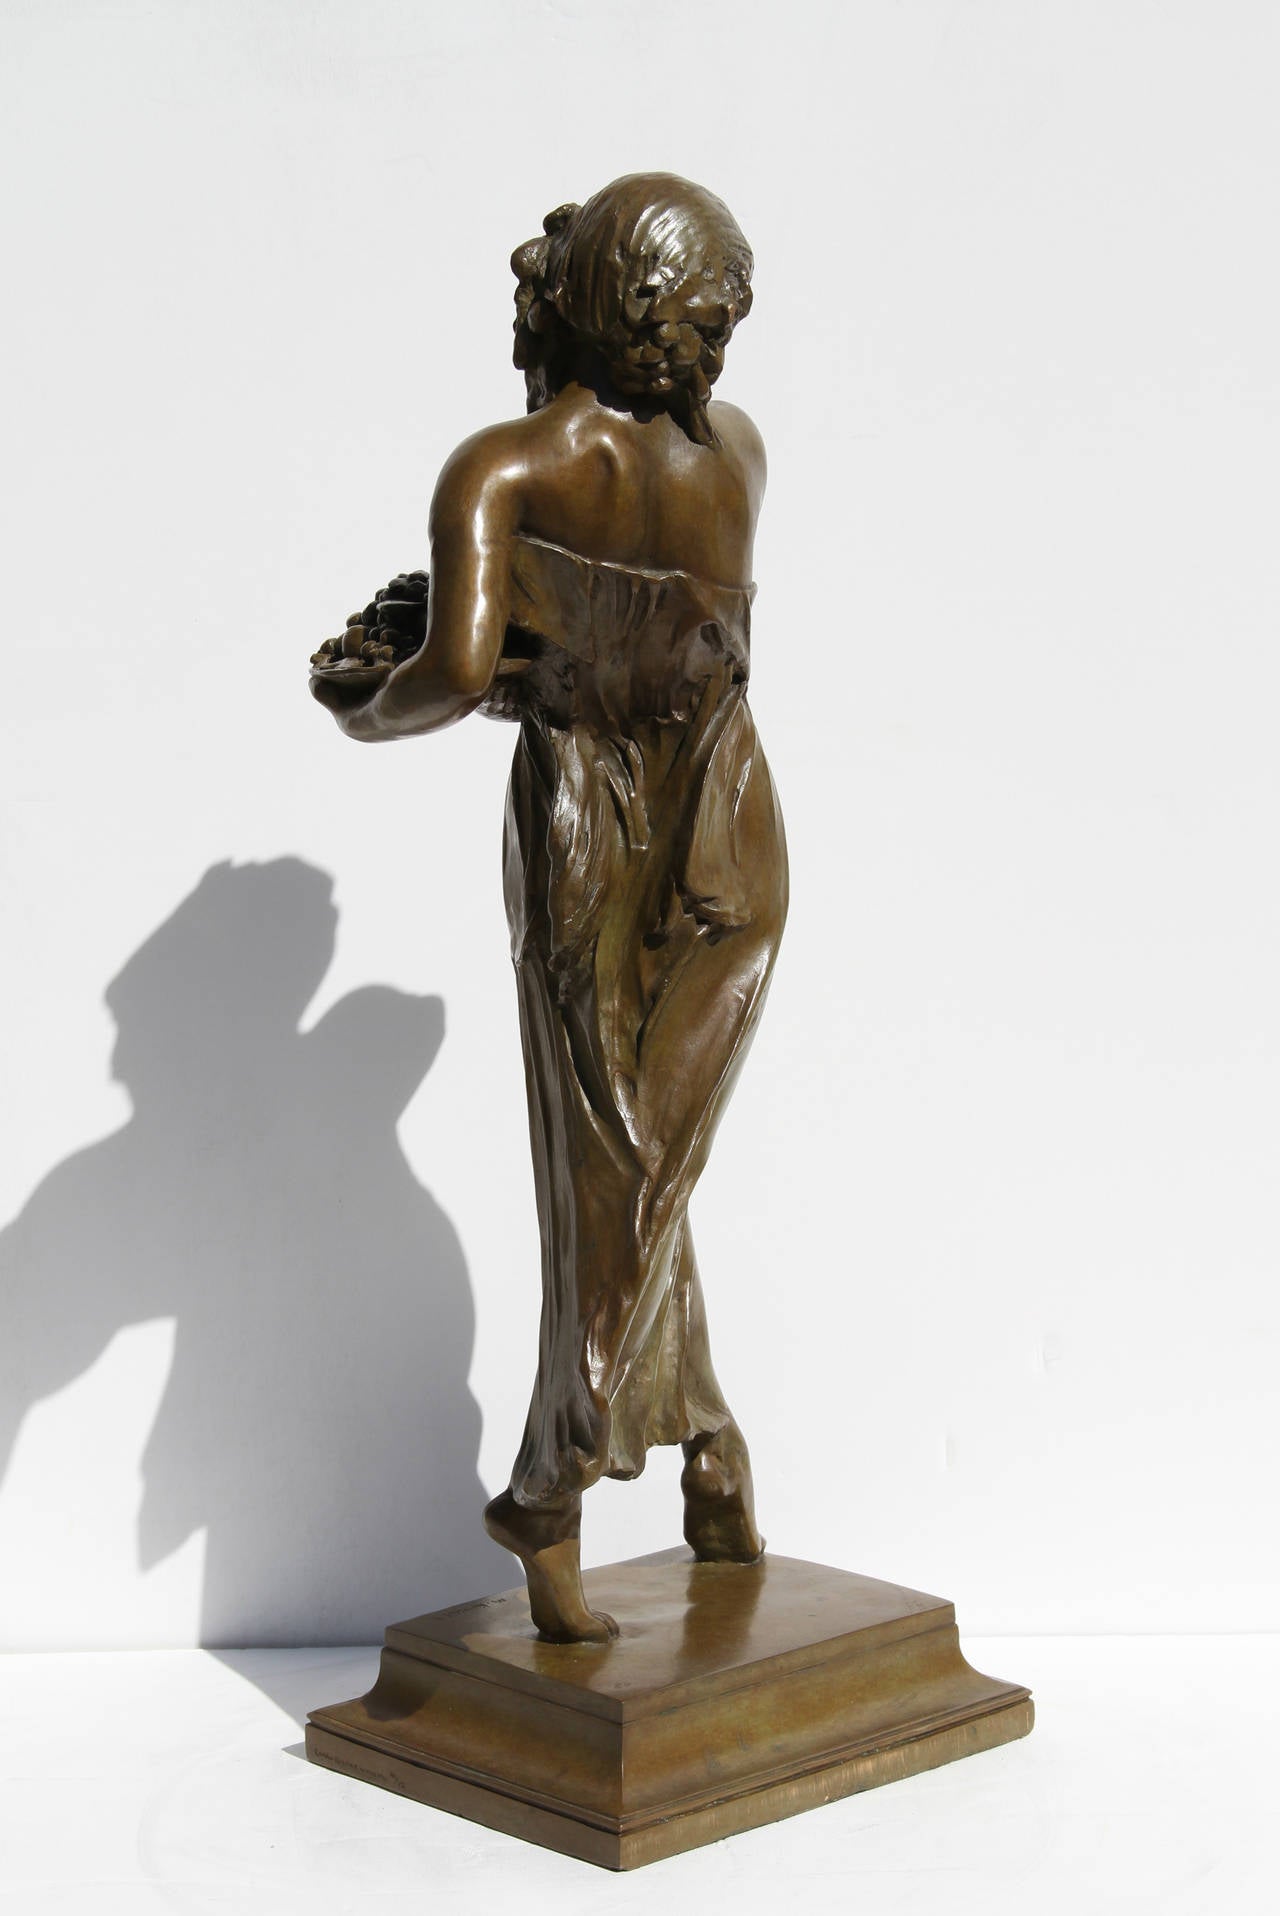 Cette sculpture en bronze de Mario Joseph Korbel est une étonnante représentation d'une femme dans le style romantique.  M. Korbel a commencé à étudier la sculpture dans son pays d'origine, la République tchèque, et a poursuivi ses études après